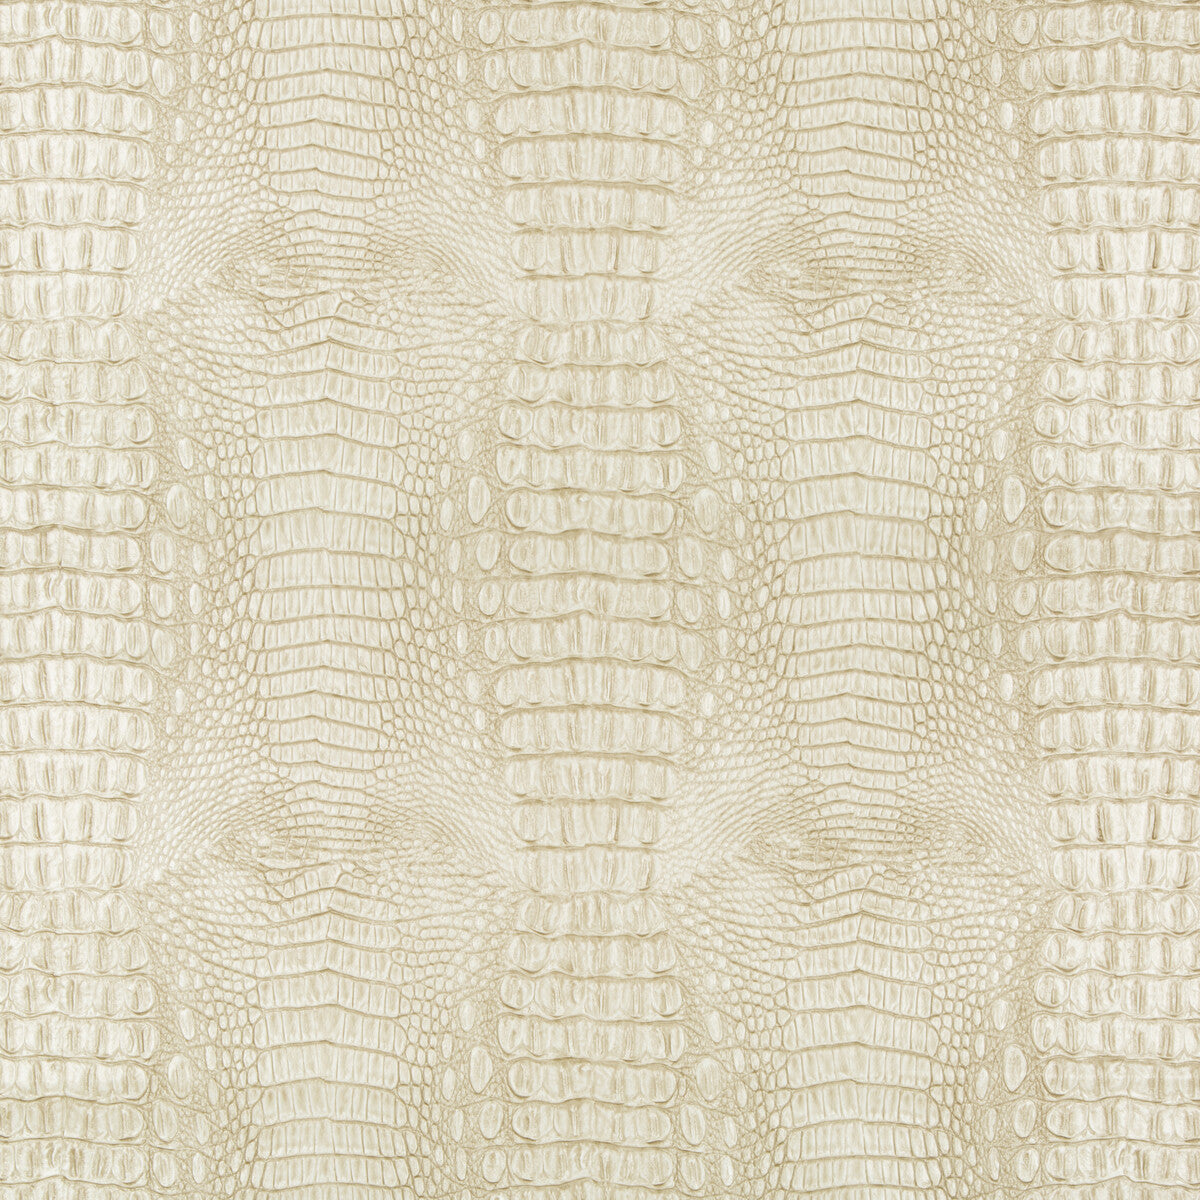 Kravet Design fabric in arrogate-116 color - pattern ARROGATE.116.0 - by Kravet Design